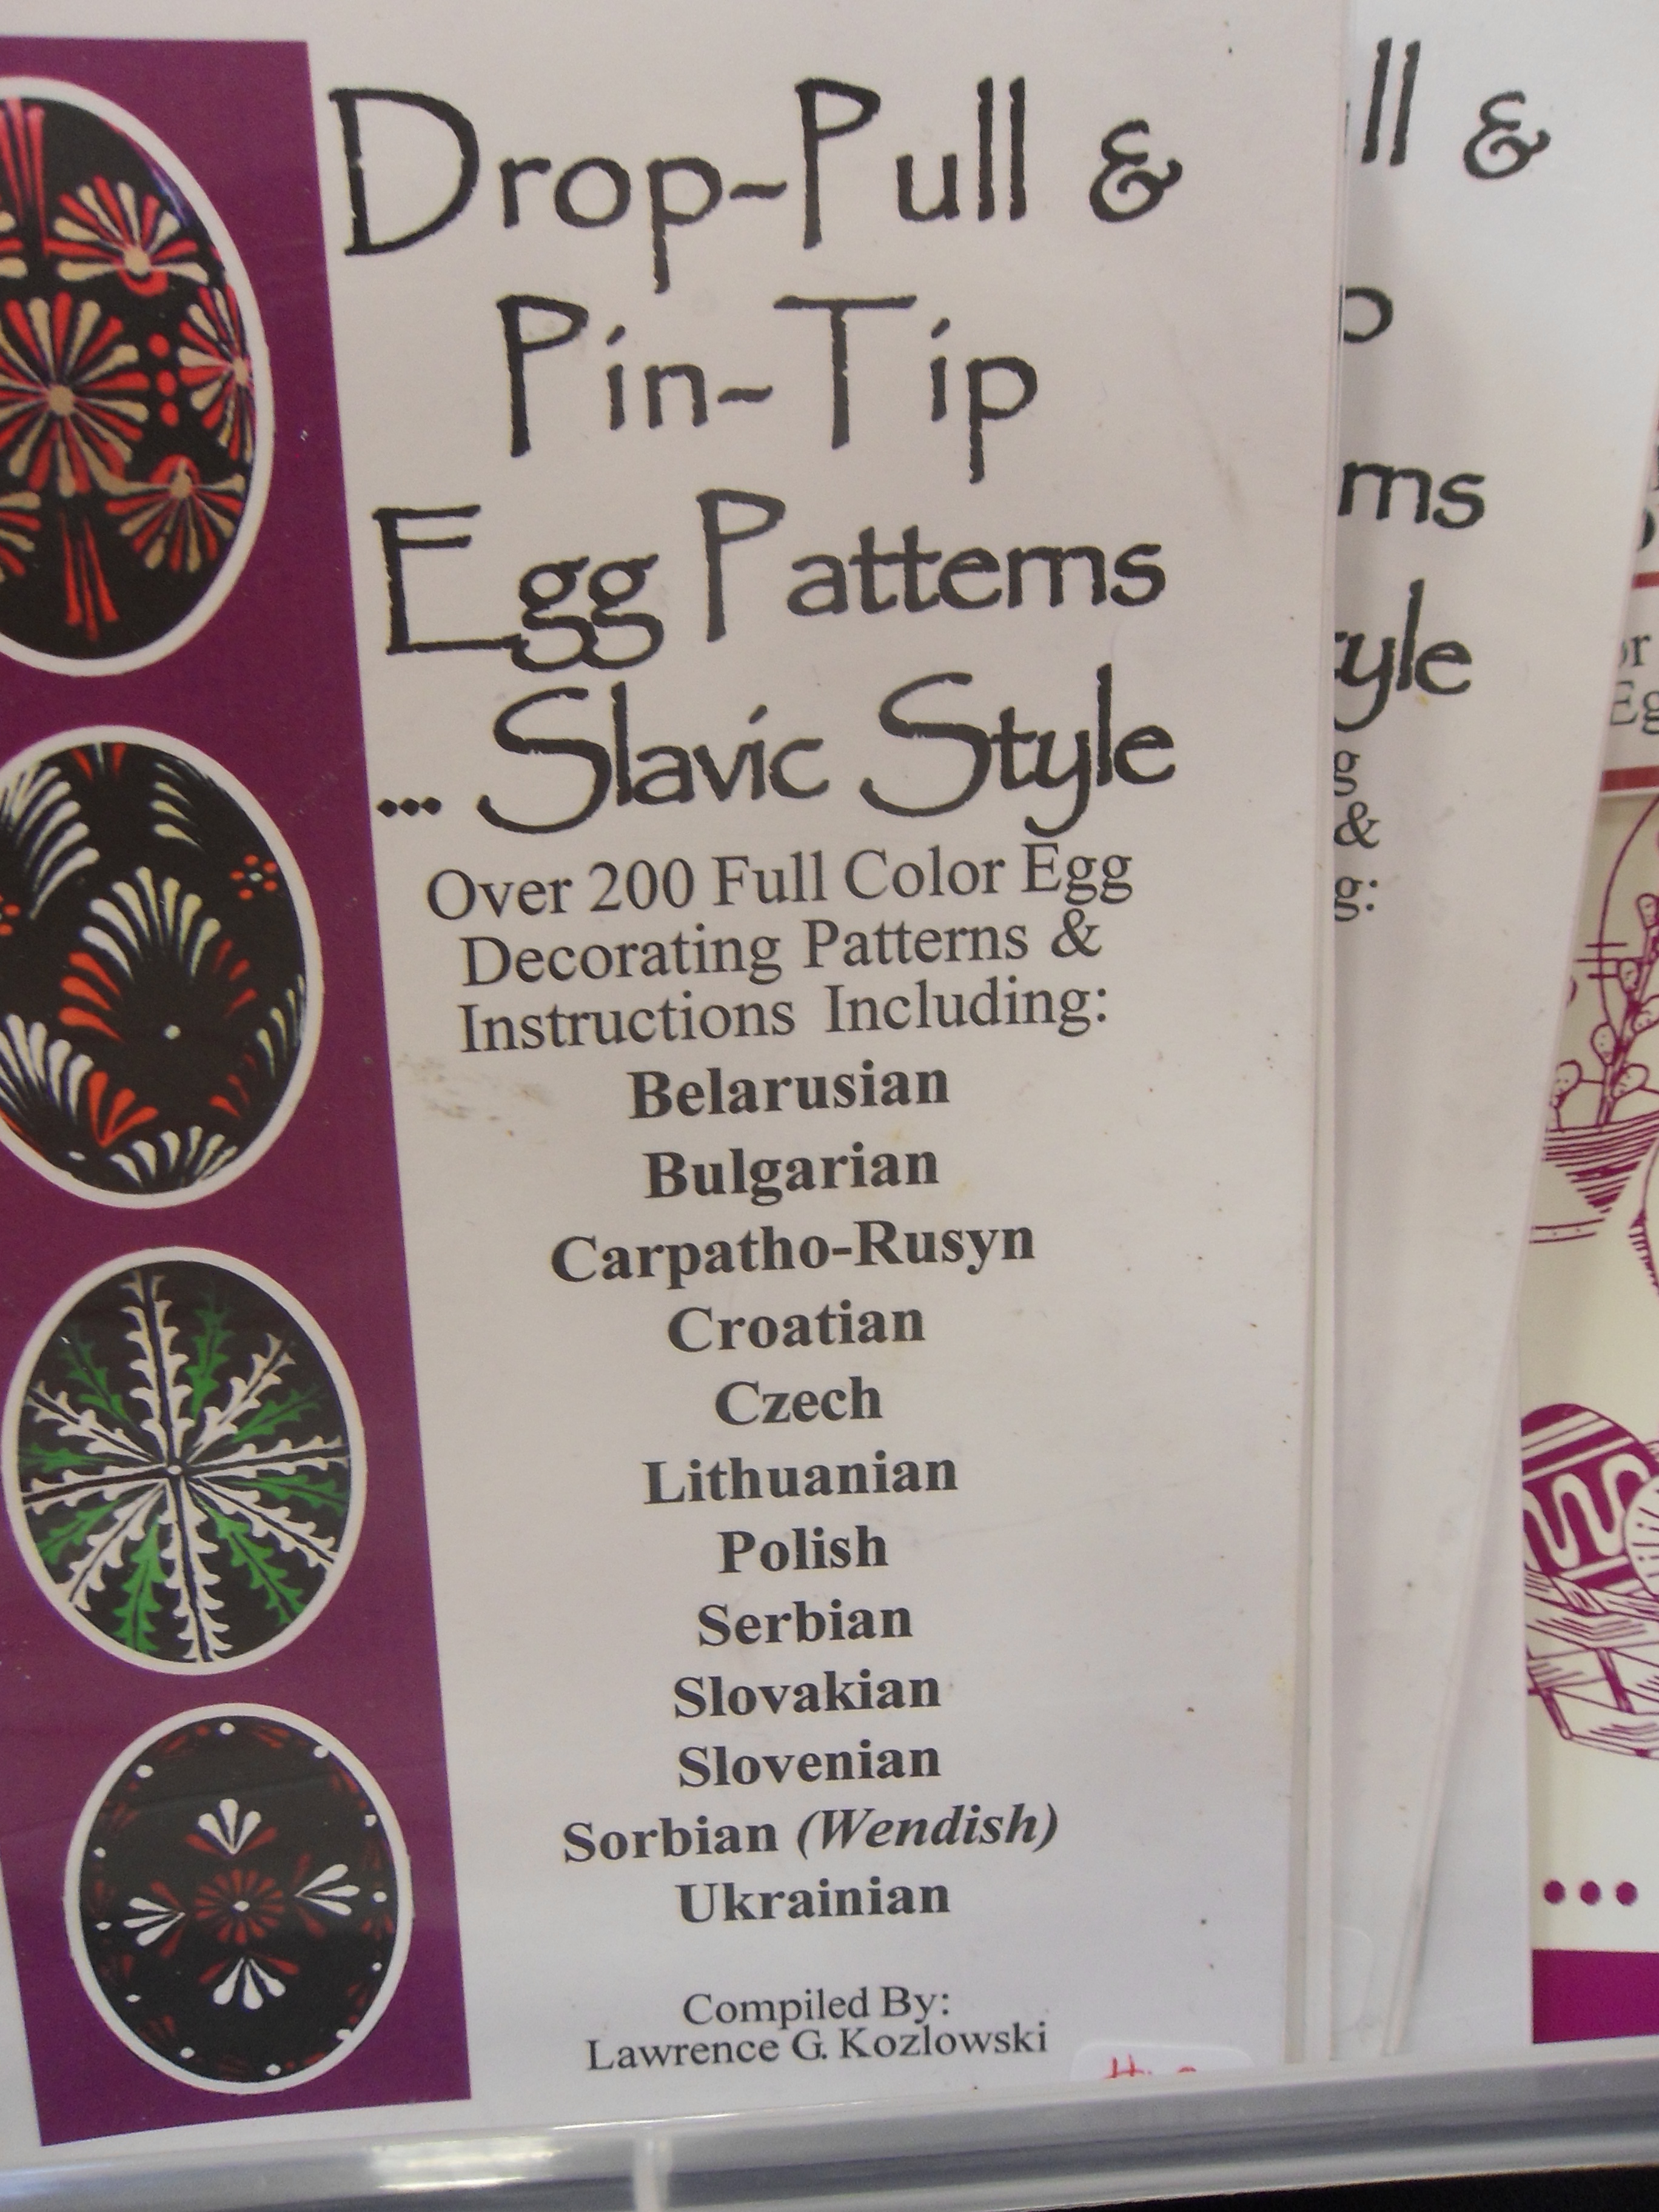 Egg Patterns Slavic Style